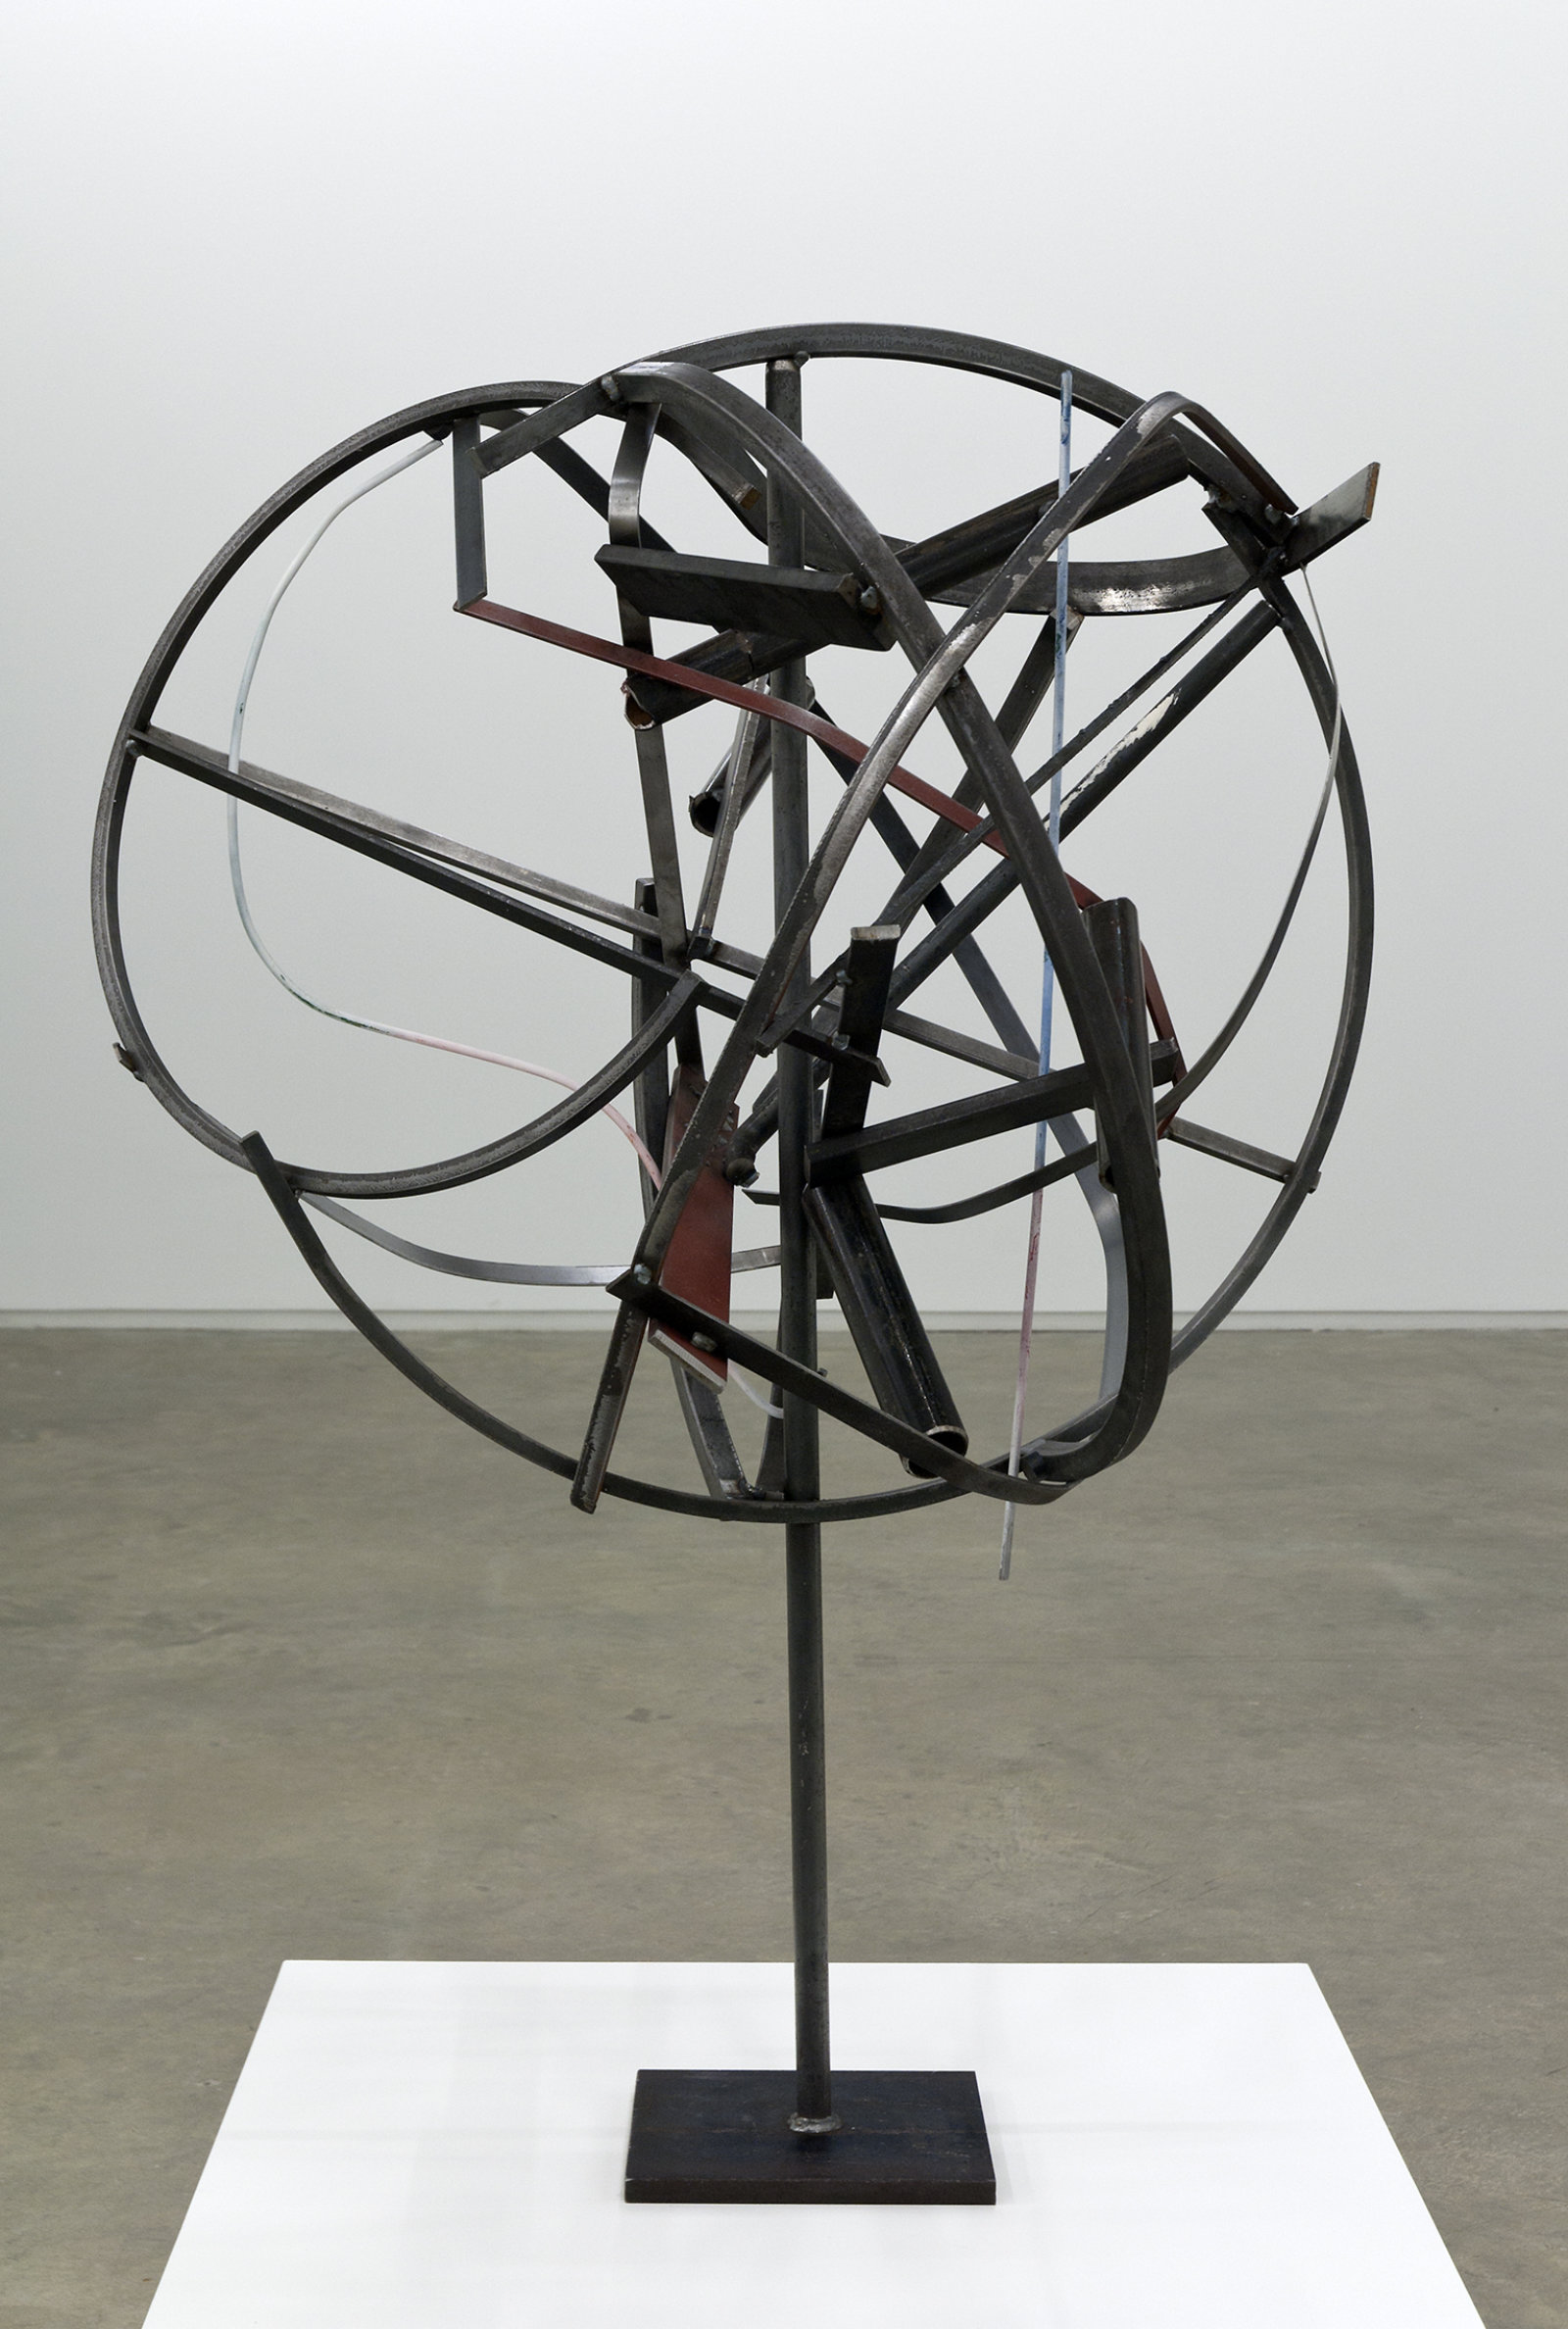 Damian Moppett, Untitled, 2010, steel, magnets, 47 x 31 x 30 in. (119 x 79 x 76 cm)